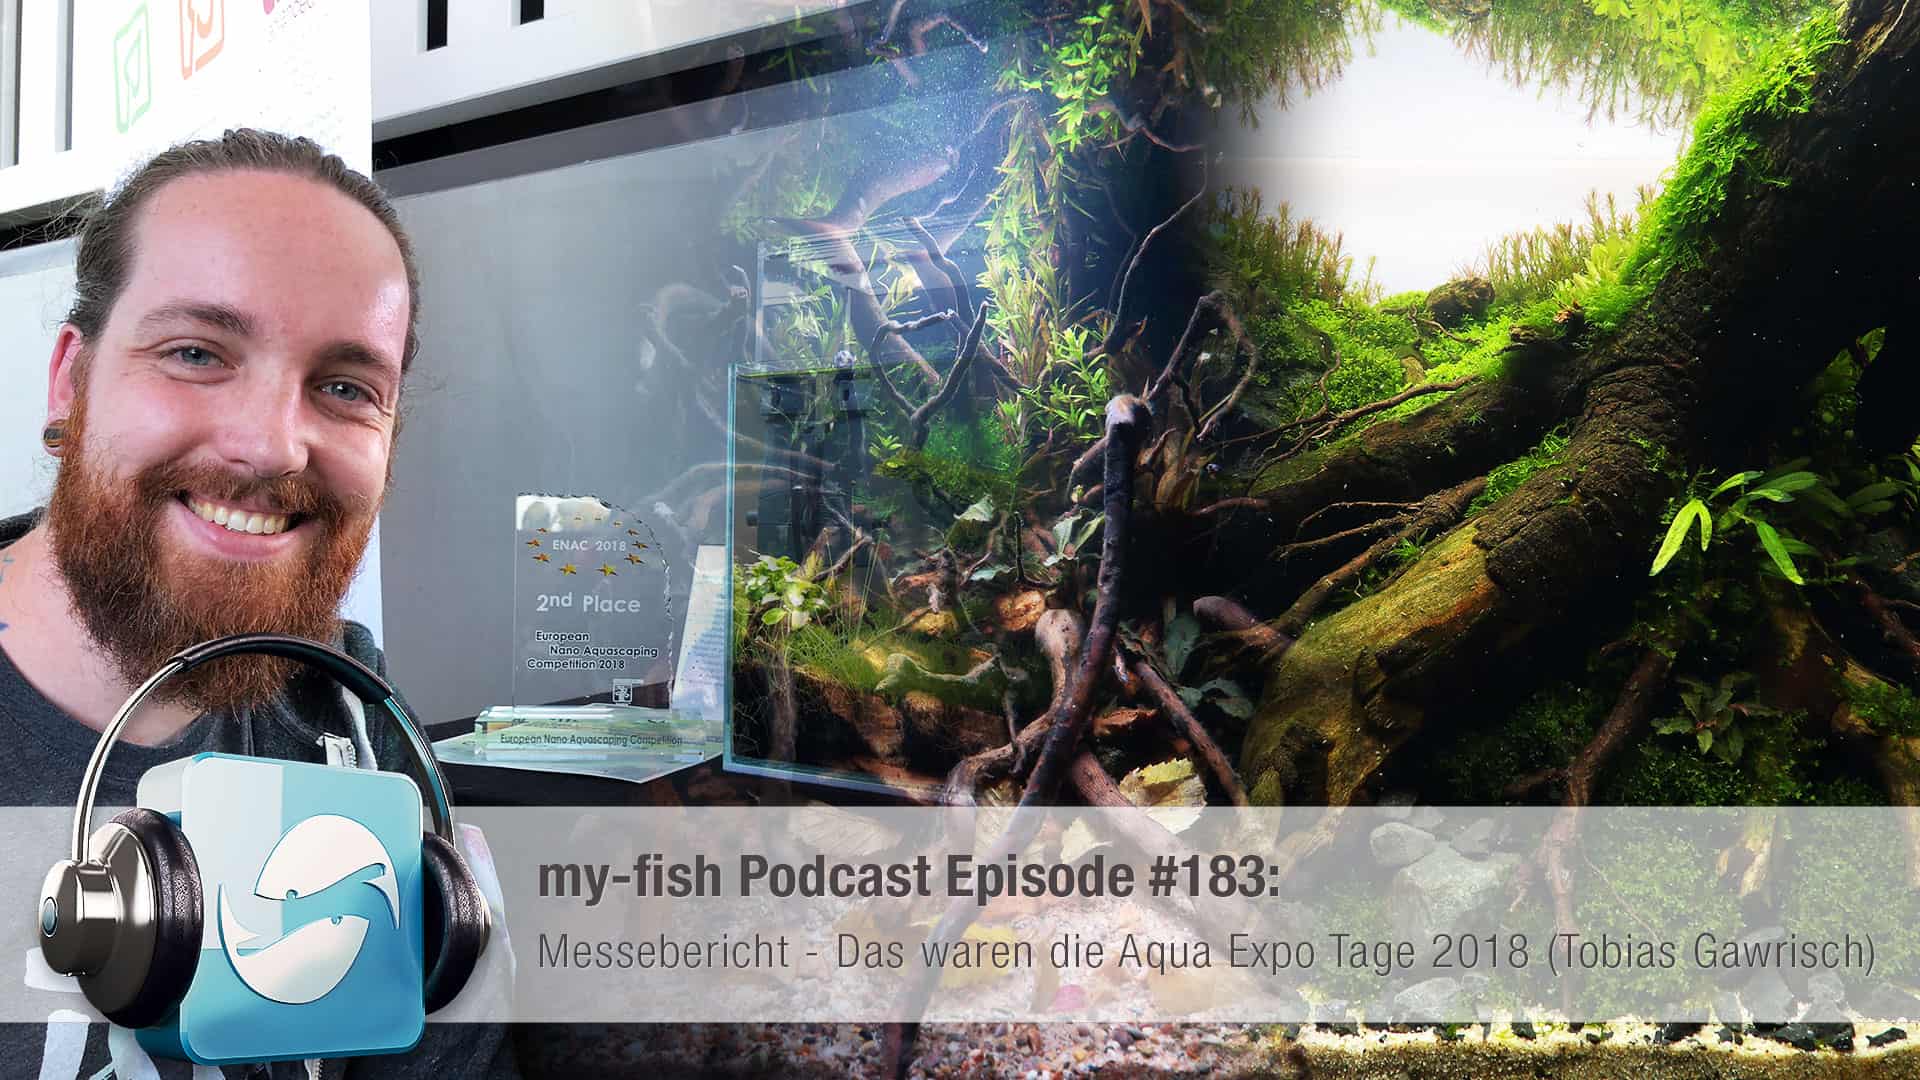 Podcast Episode #183: Messebericht - Das waren die Aqua Expo Tage 2018 (Tobias Gawrisch)